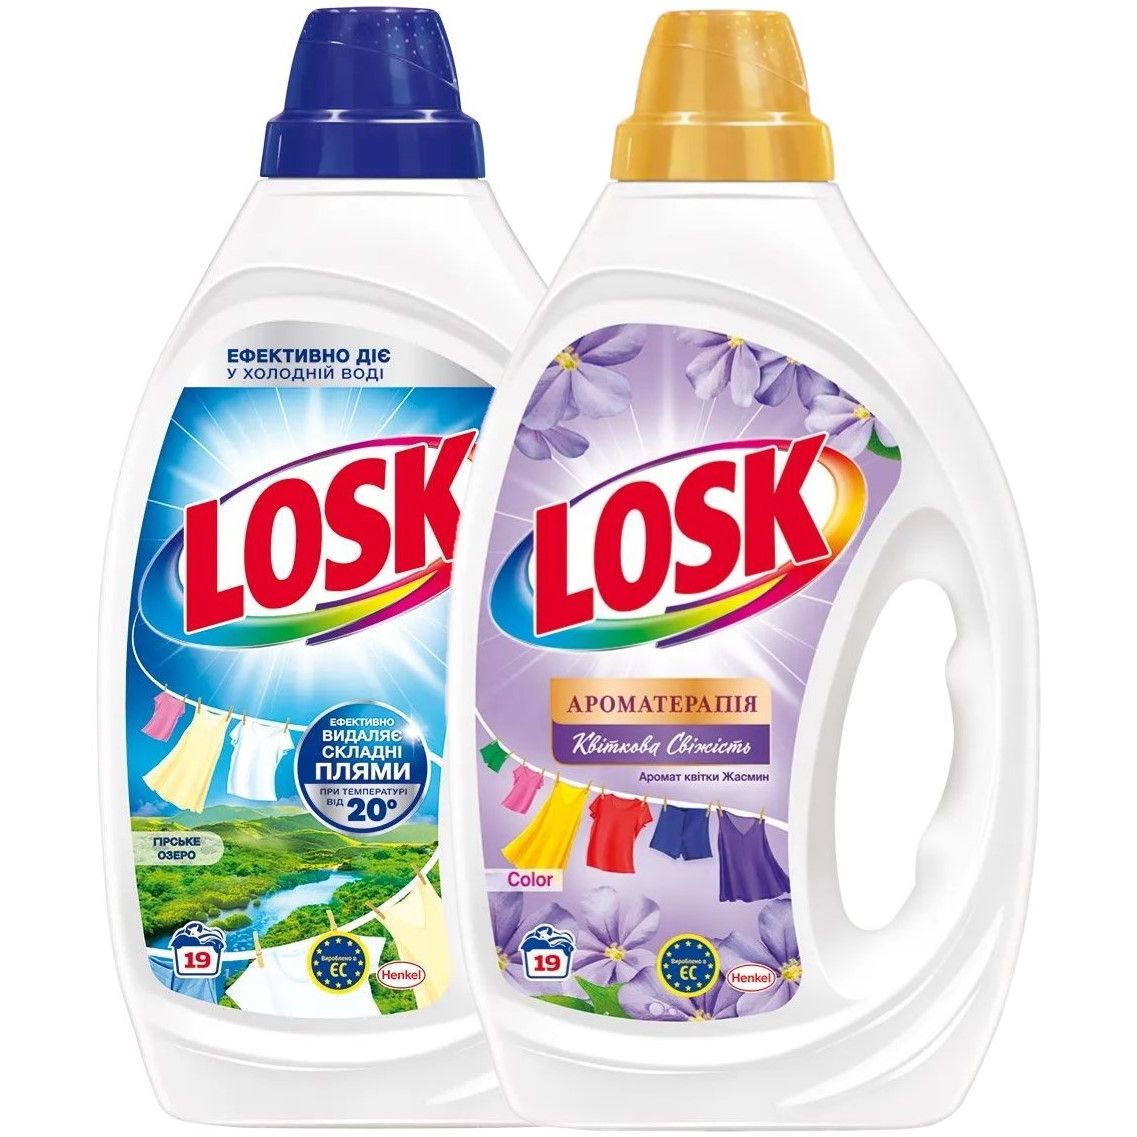 Набор Losk: Гель для стирки Losk Color Ароматерапия Эфирные масла и аромат цветка Жасмина, 855 мл + Гель для стирки Losk для белых вещей Горное озеро, 855 мл - фото 1